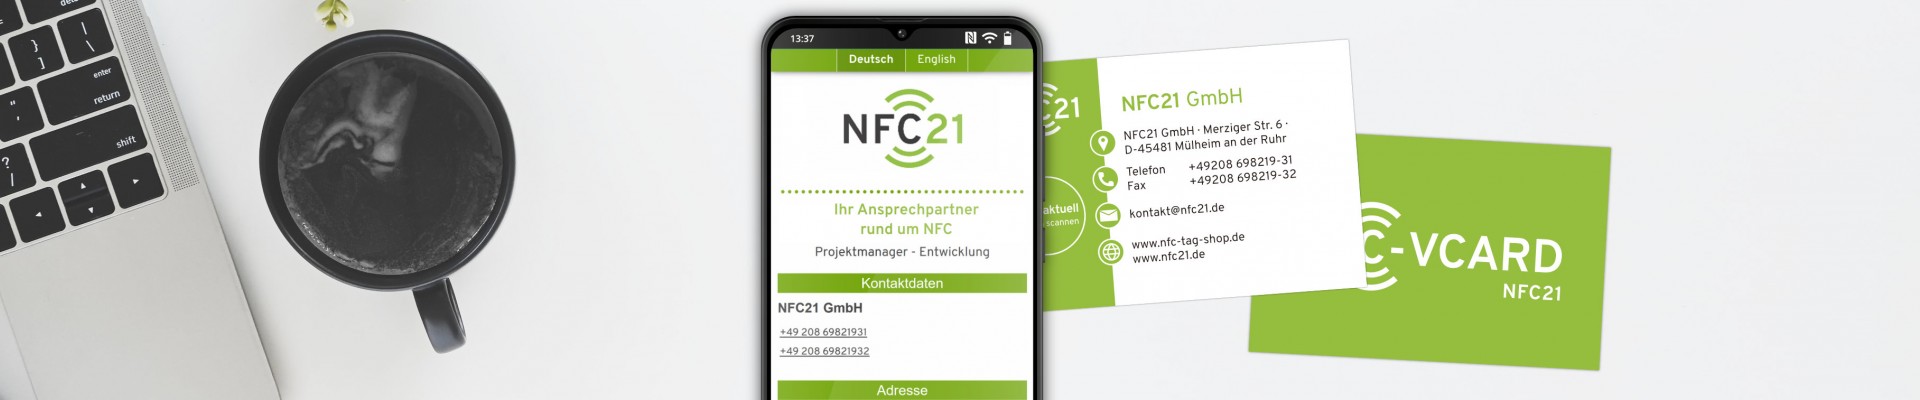 NFC-vCard: nachhaltiges Netzwerken mit digitaler Visitenkarte